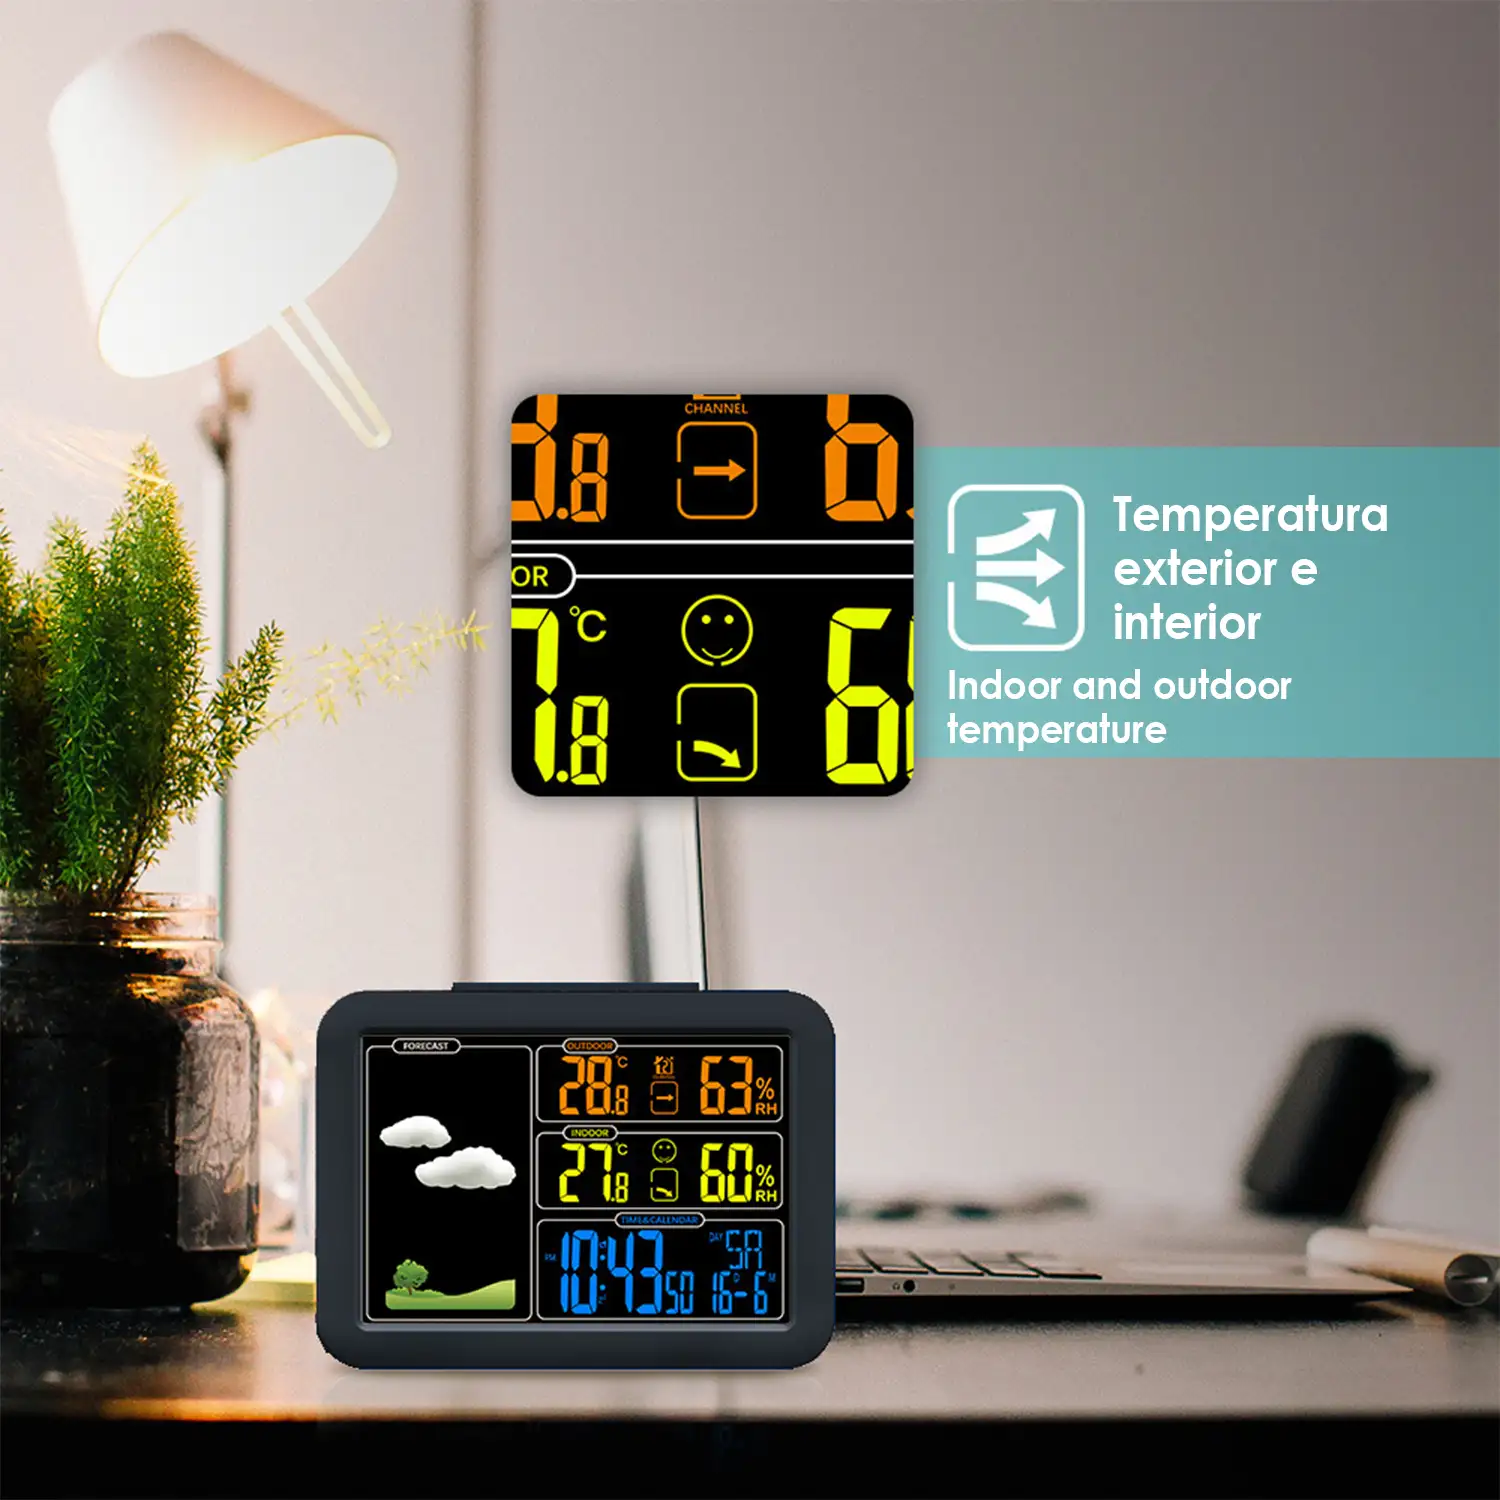 Estación meteorológica automática en color de alta precisión con barómetro higrómetro. Temperatura y humedad exterior e interior. Incluye emisor de exteriores.